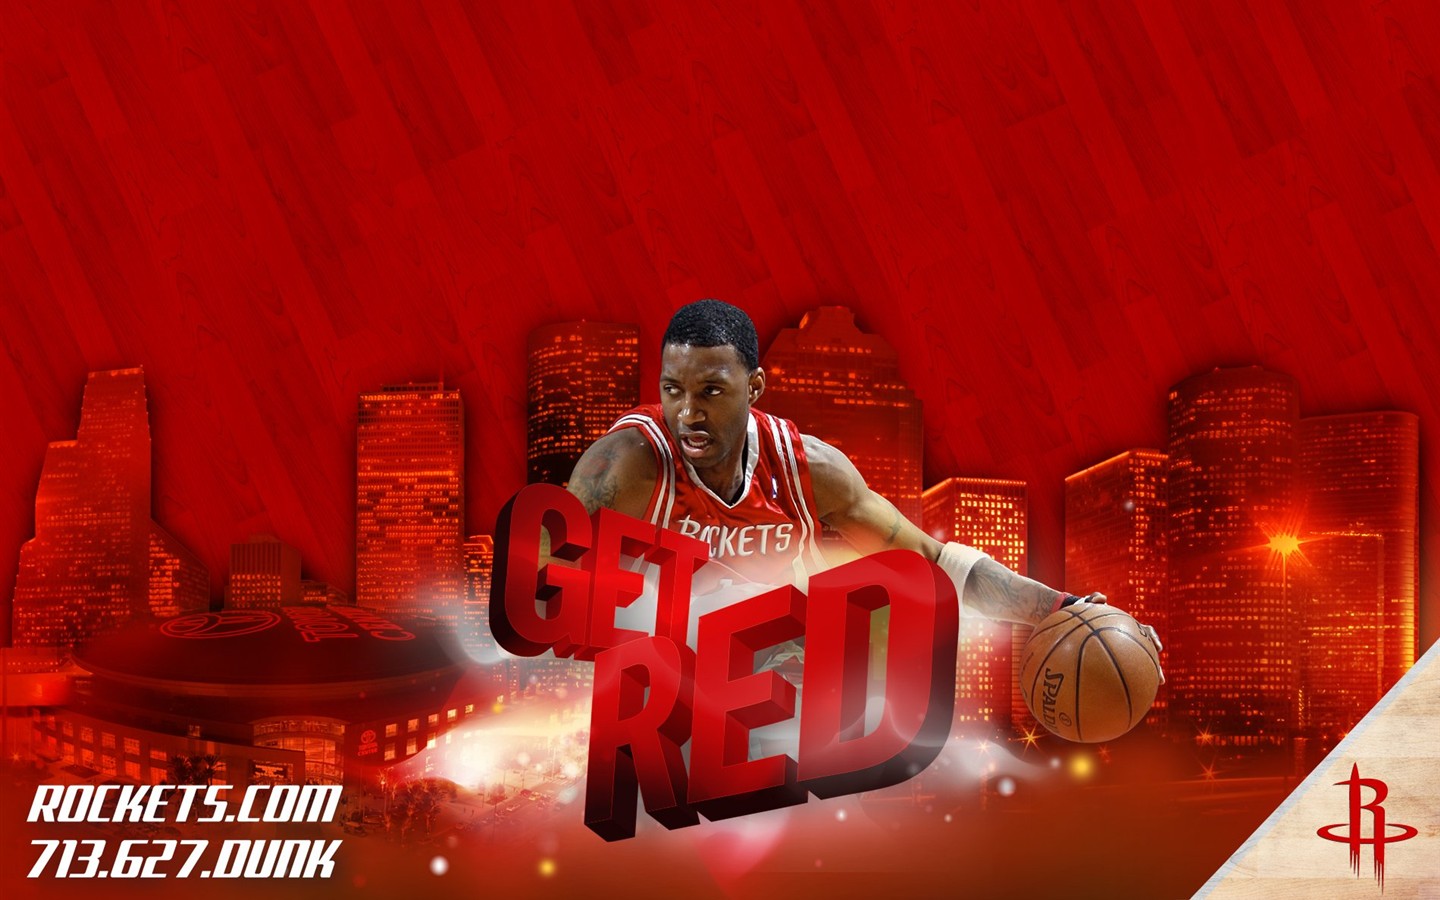 NBA Houston Rockets 2009 Playoff-Tapete #4 - 1440x900